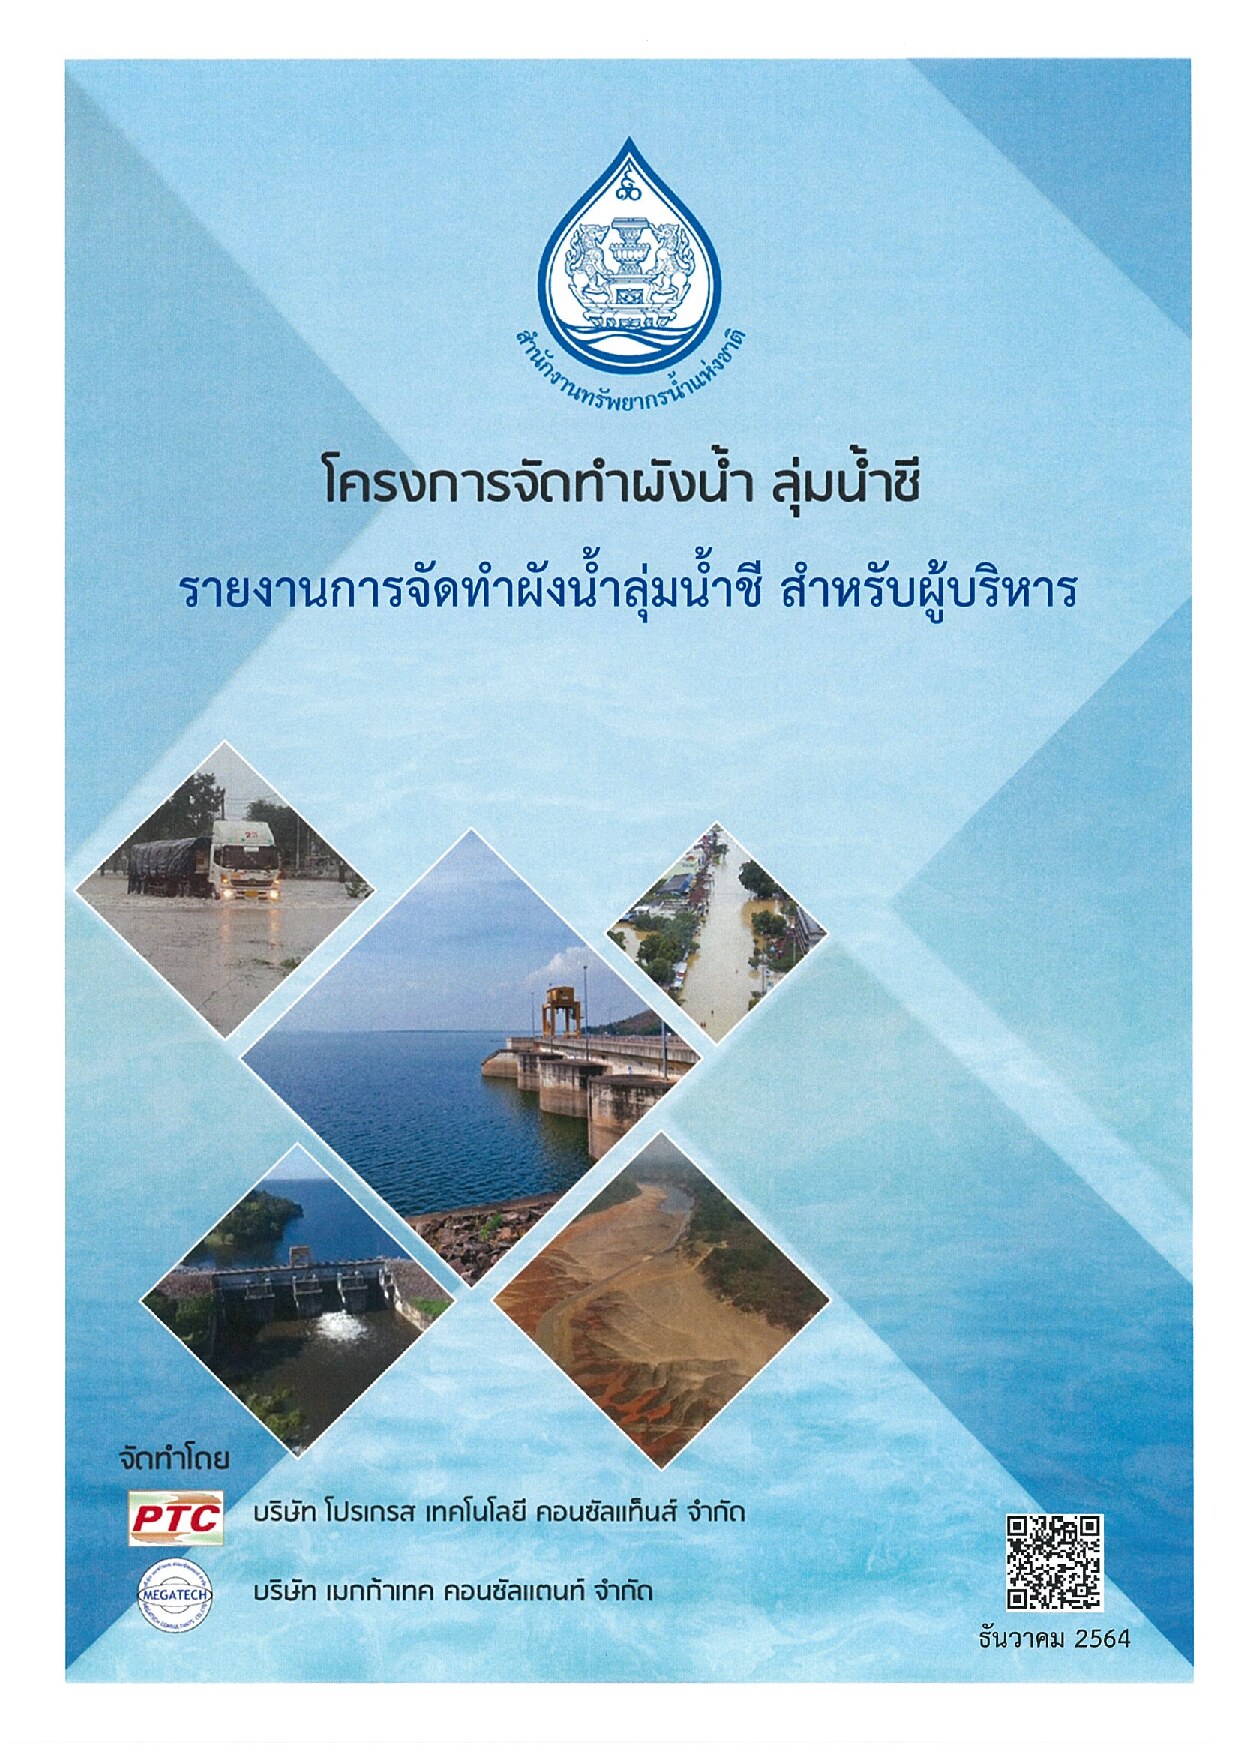 เล่มที่ 1 รายงานสรุปสำหรับผู้บริหาร (ฉบับภาษาไทย) โครงการจัดทำผังน้ำ ลุ่มน้ำชี